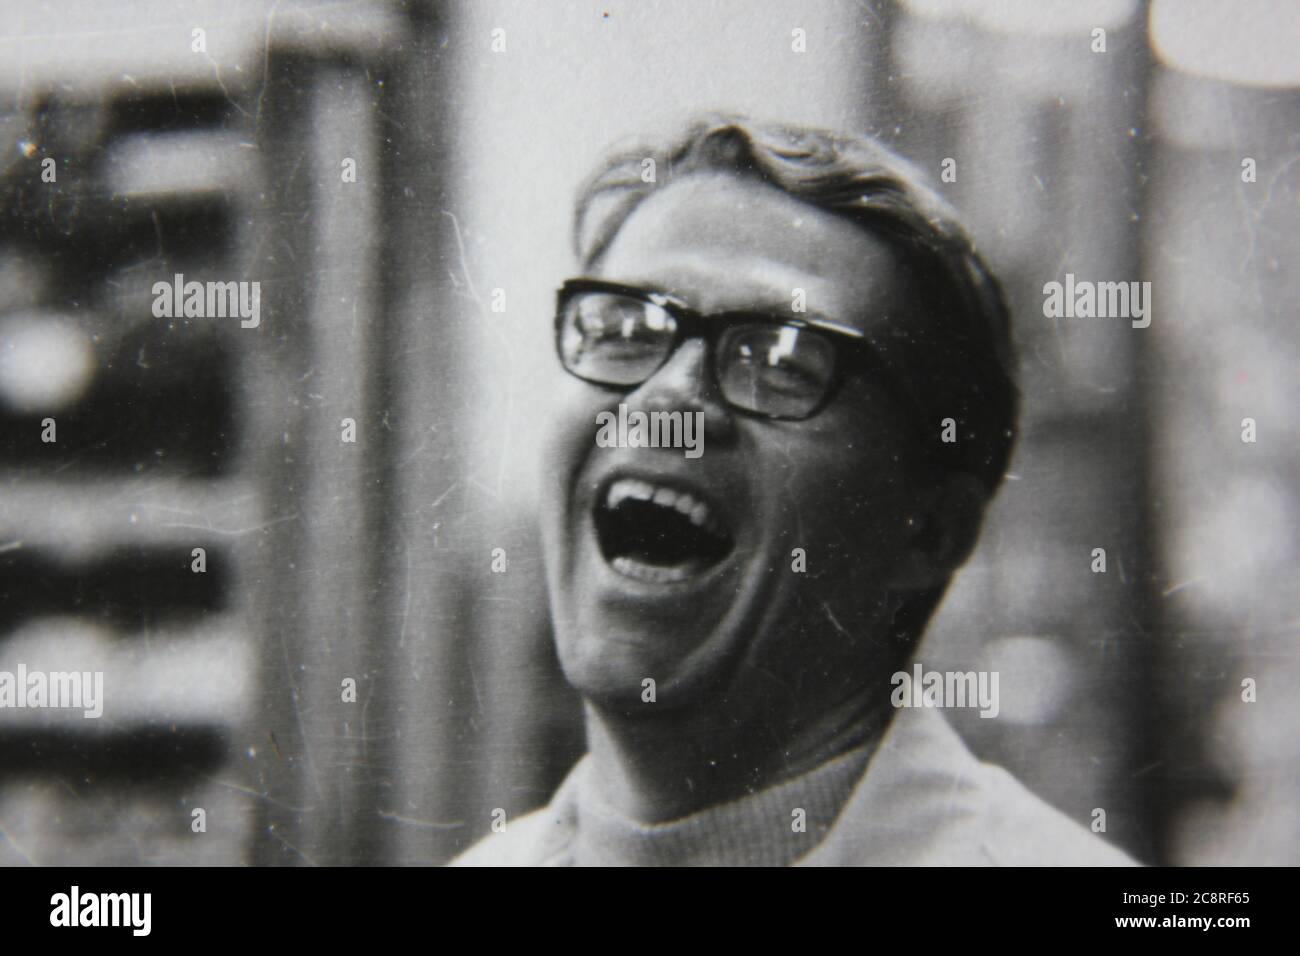 Fine anni '70 vintage stile di vita in bianco e nero fotografia di un uomo che ride profondamente mentre si guarda la fotocamera. Foto Stock